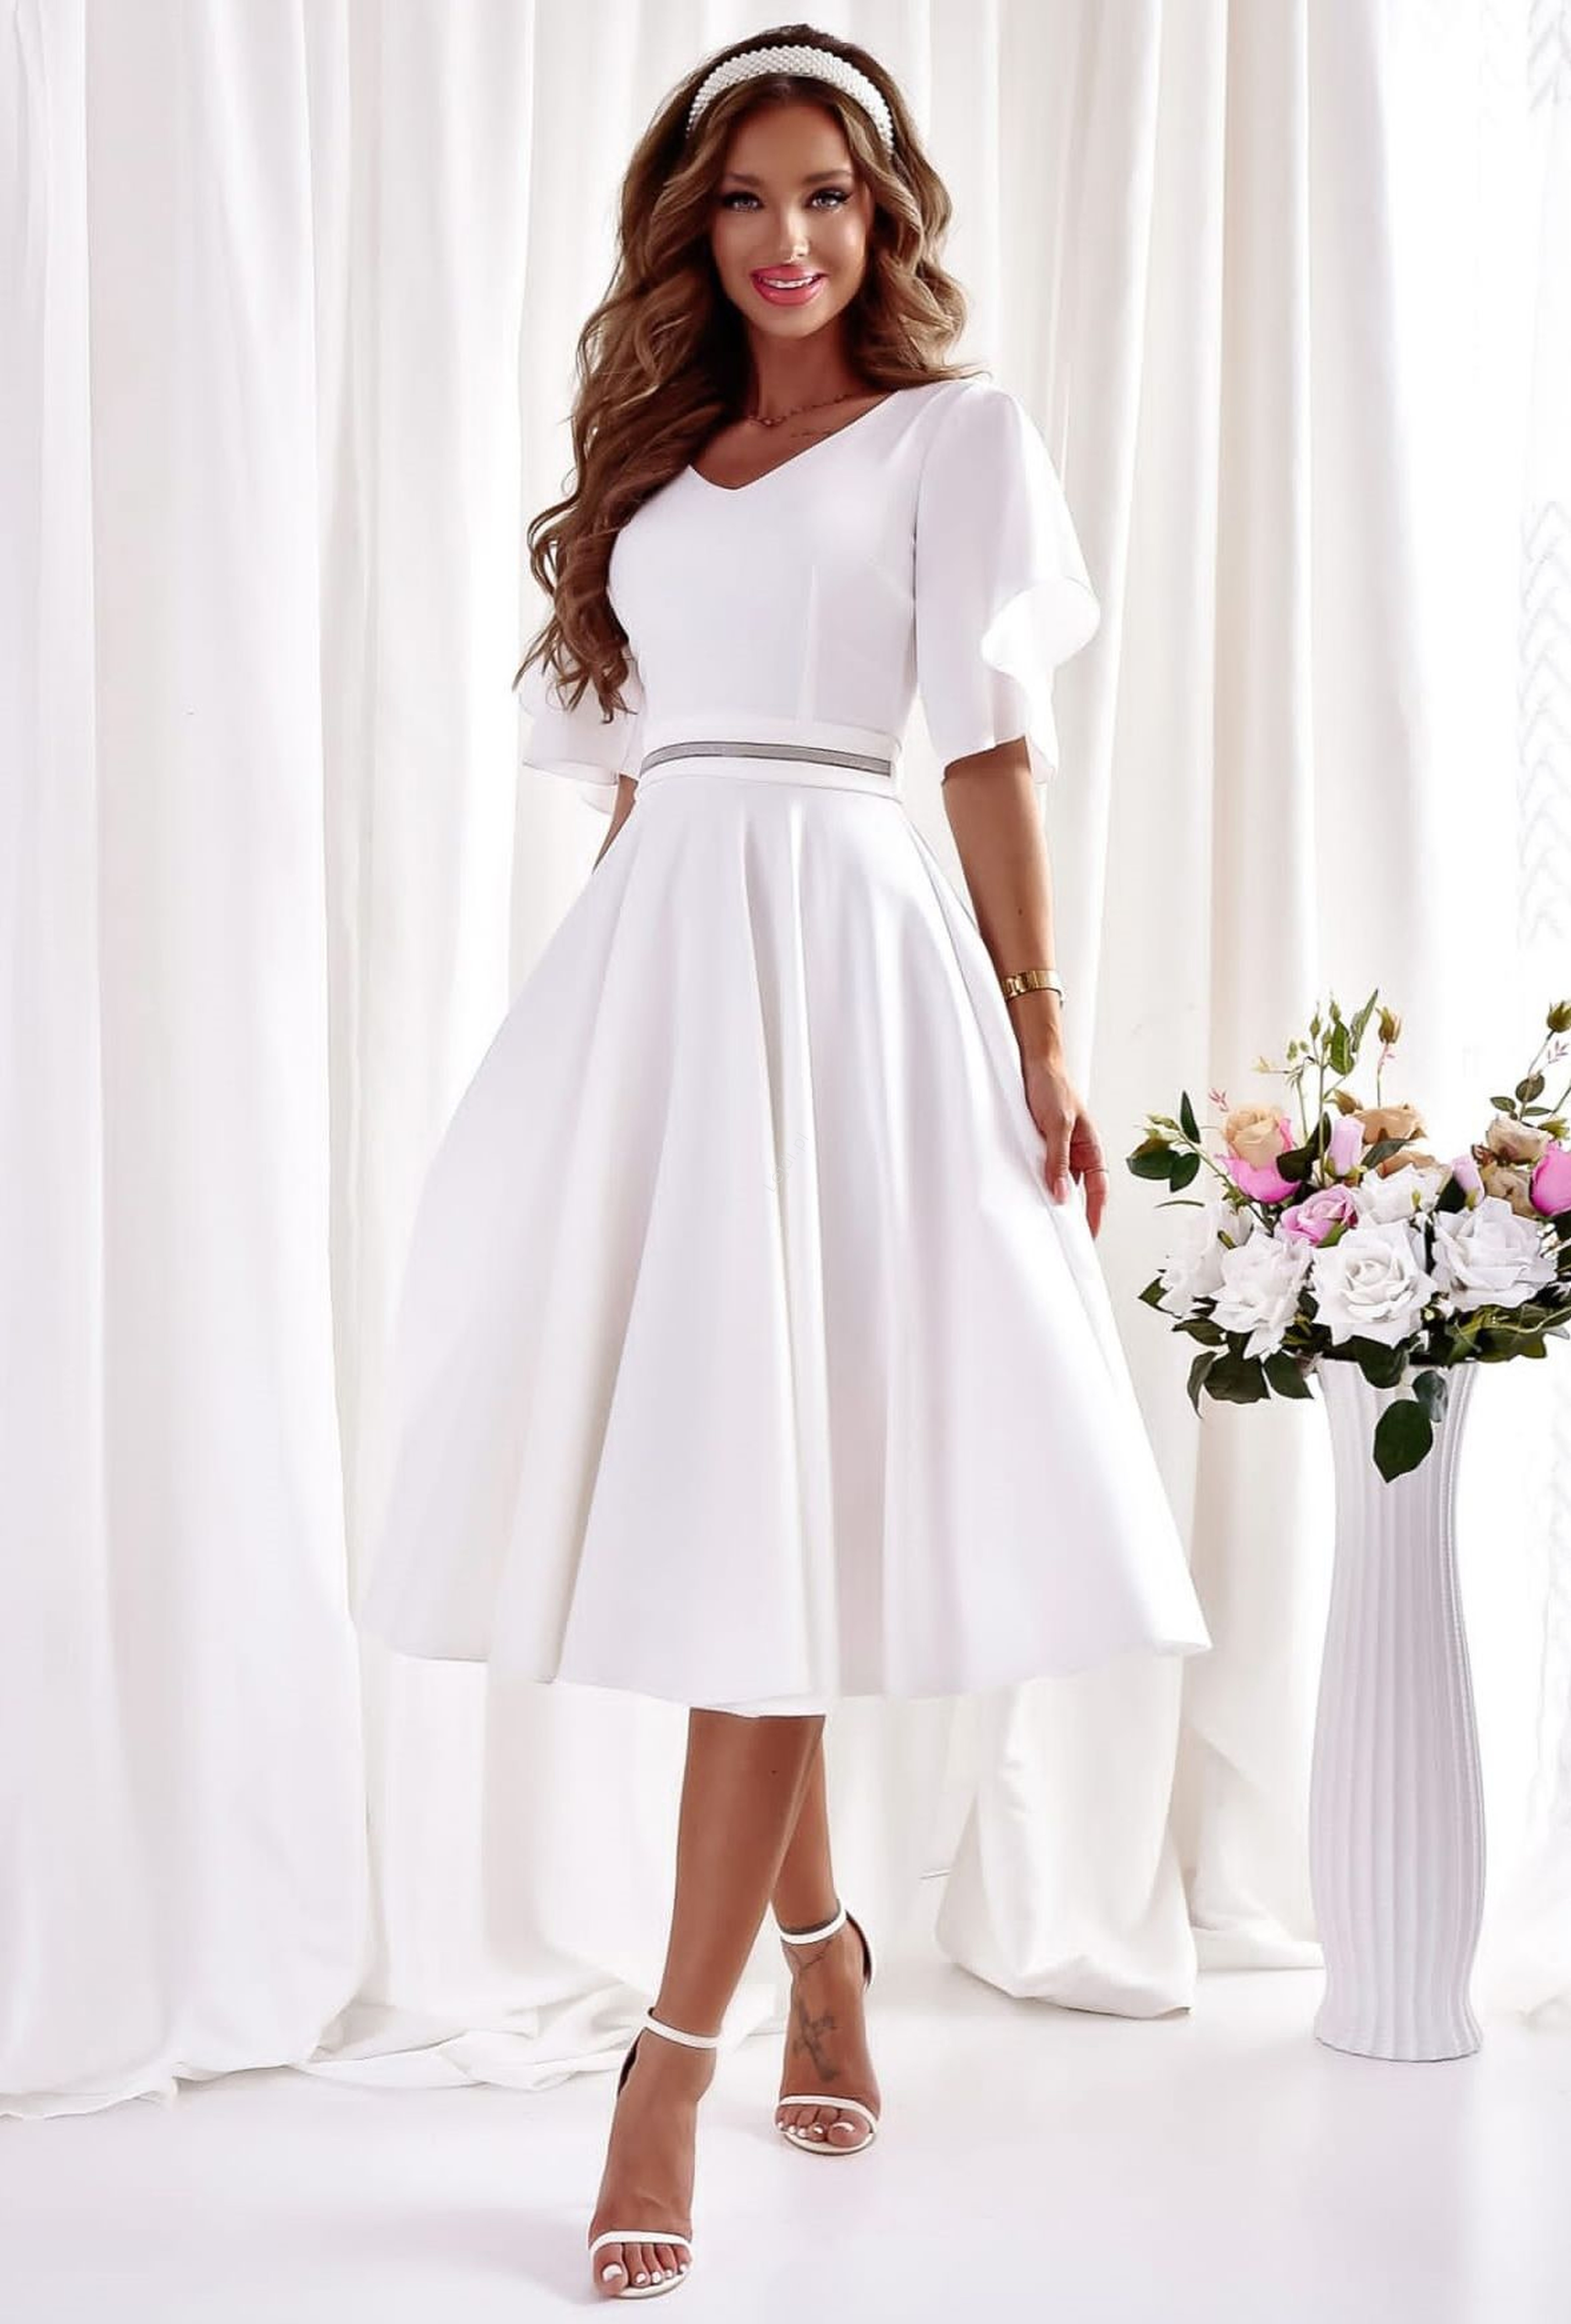 Image of Elegancka sukienka rozkloszowana w kolorze ecru, midi sukienka do ślubu cywilnego, na poprawiny 0103